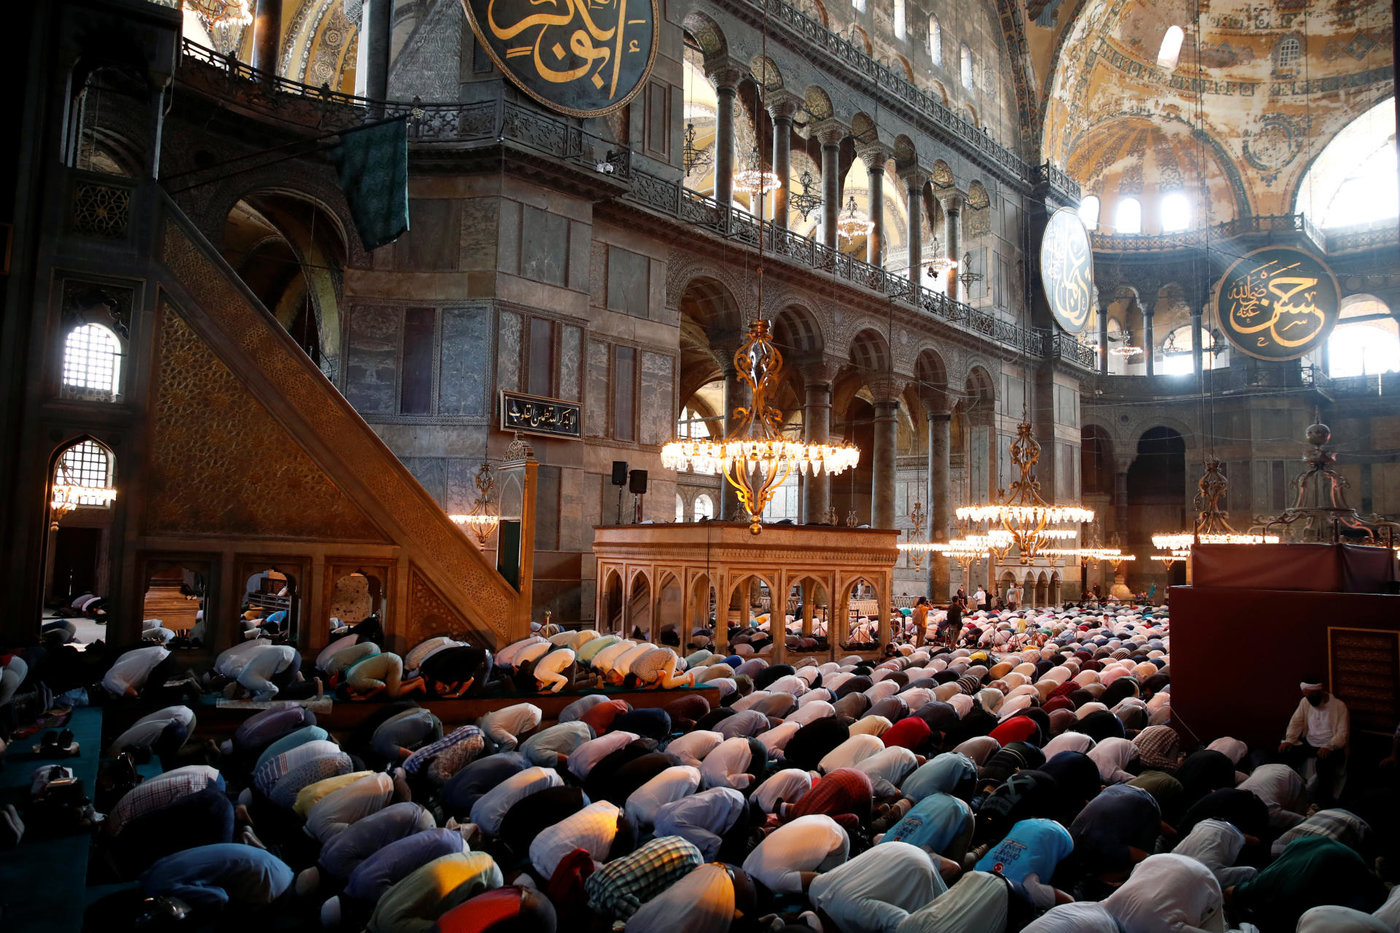 premiere priere a sainte sophie la musulmane le temps